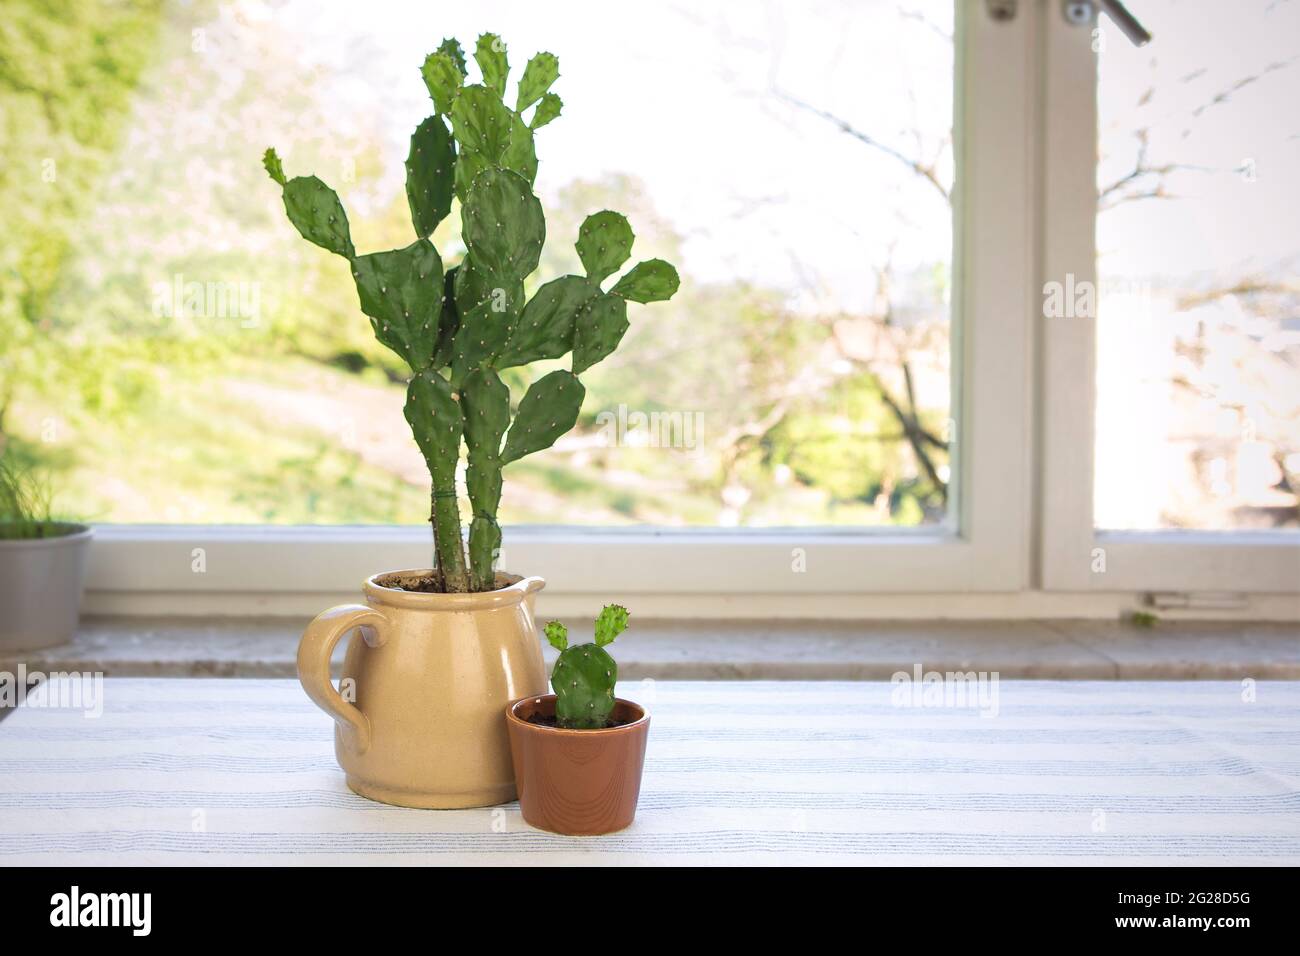 Großer und kleiner Kaktus im Blumentopf. Opuntia ficus-indica, Kaktusbirne oder indische Feige. Zwei Kakteen beherbergen Pflanzen auf dem Tisch am Fenster. Stockfoto